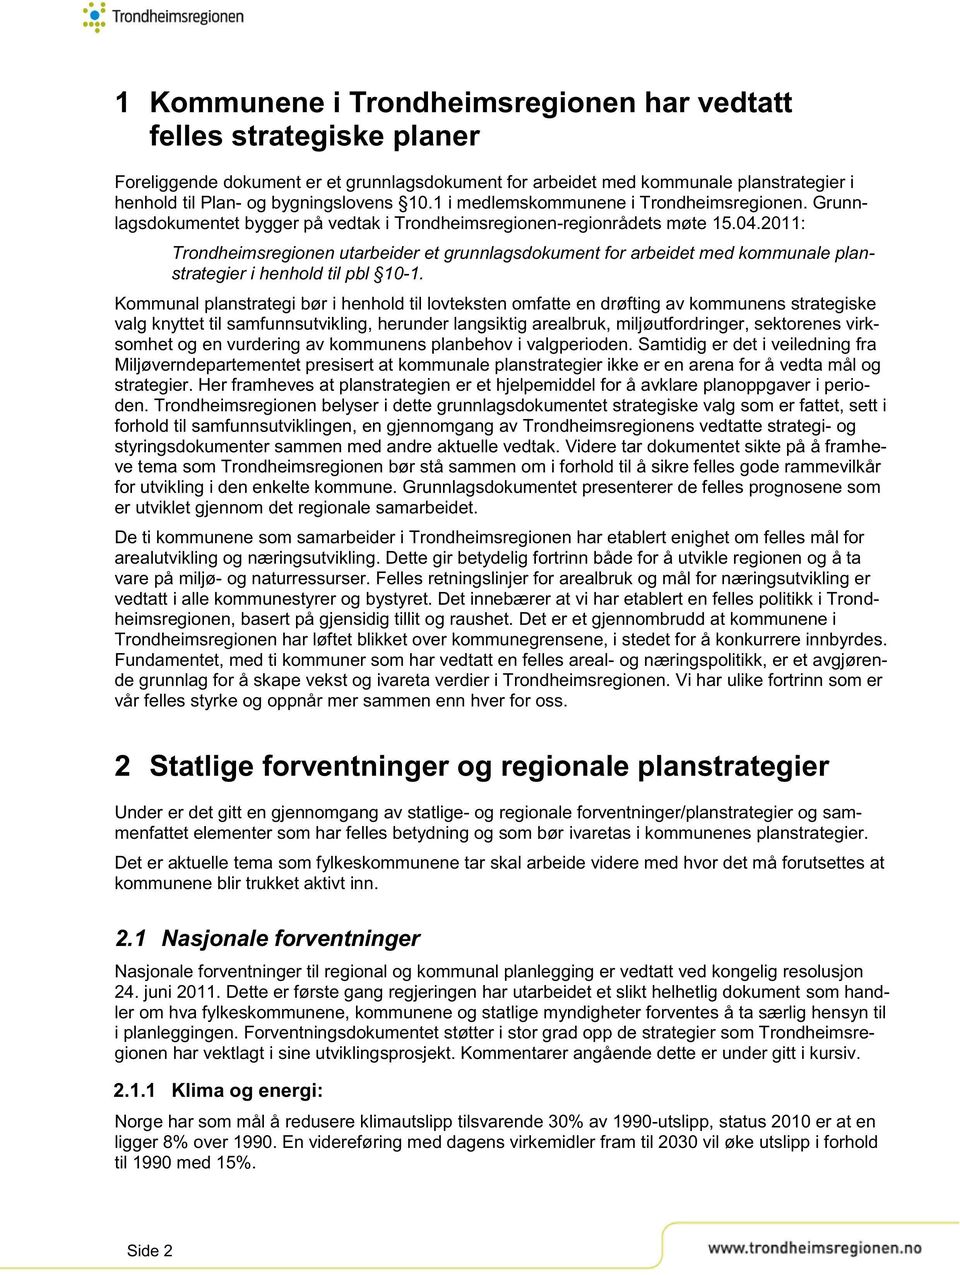 2011: Trondheimsregionen utarbeider et grunnlagsdokument for arbeidet med kommunale planstrategier i henhold til pbl 10-1.